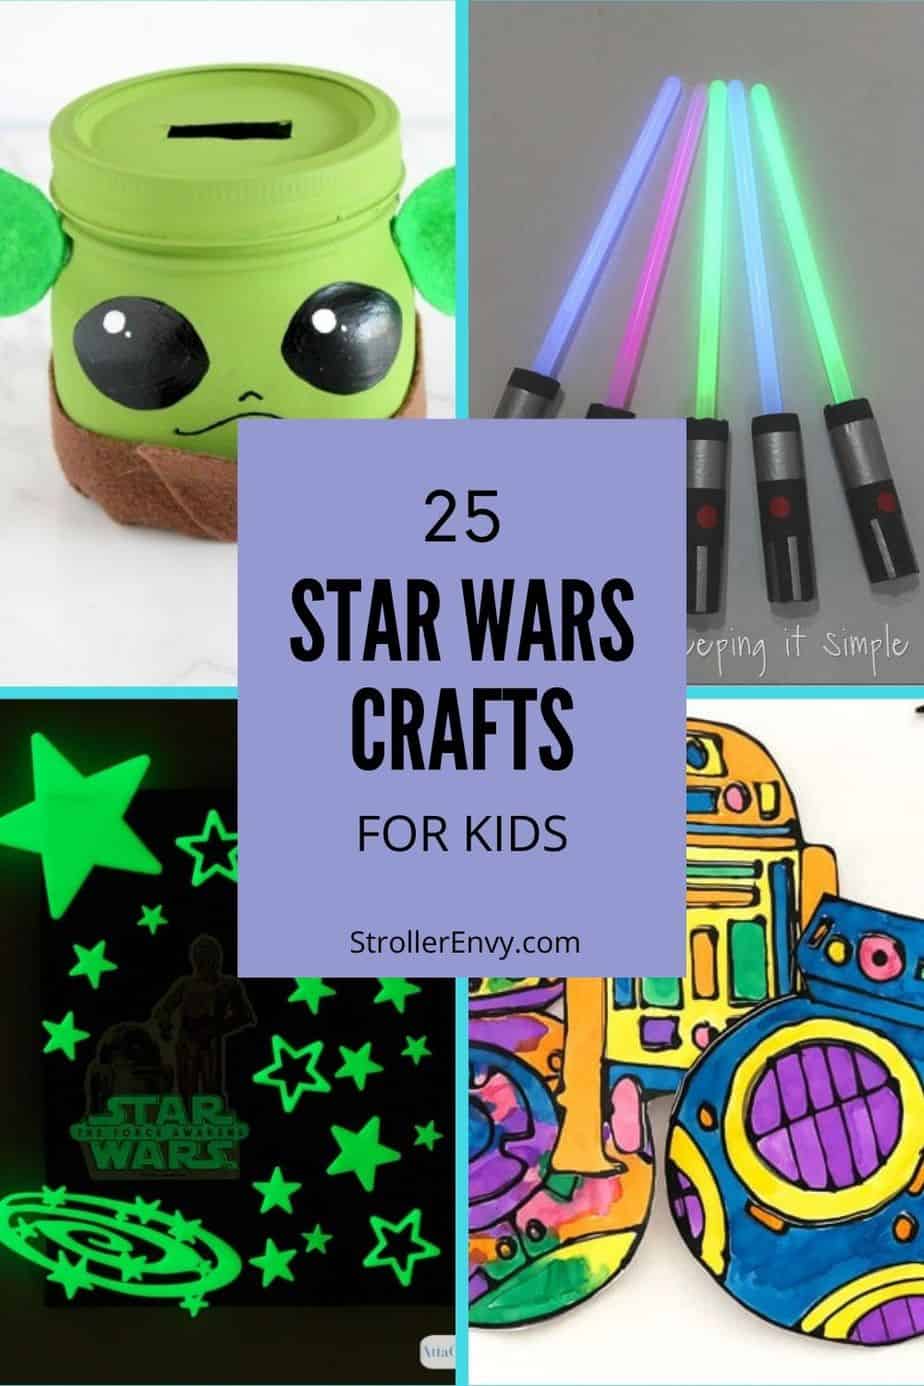 Star Wars crafts